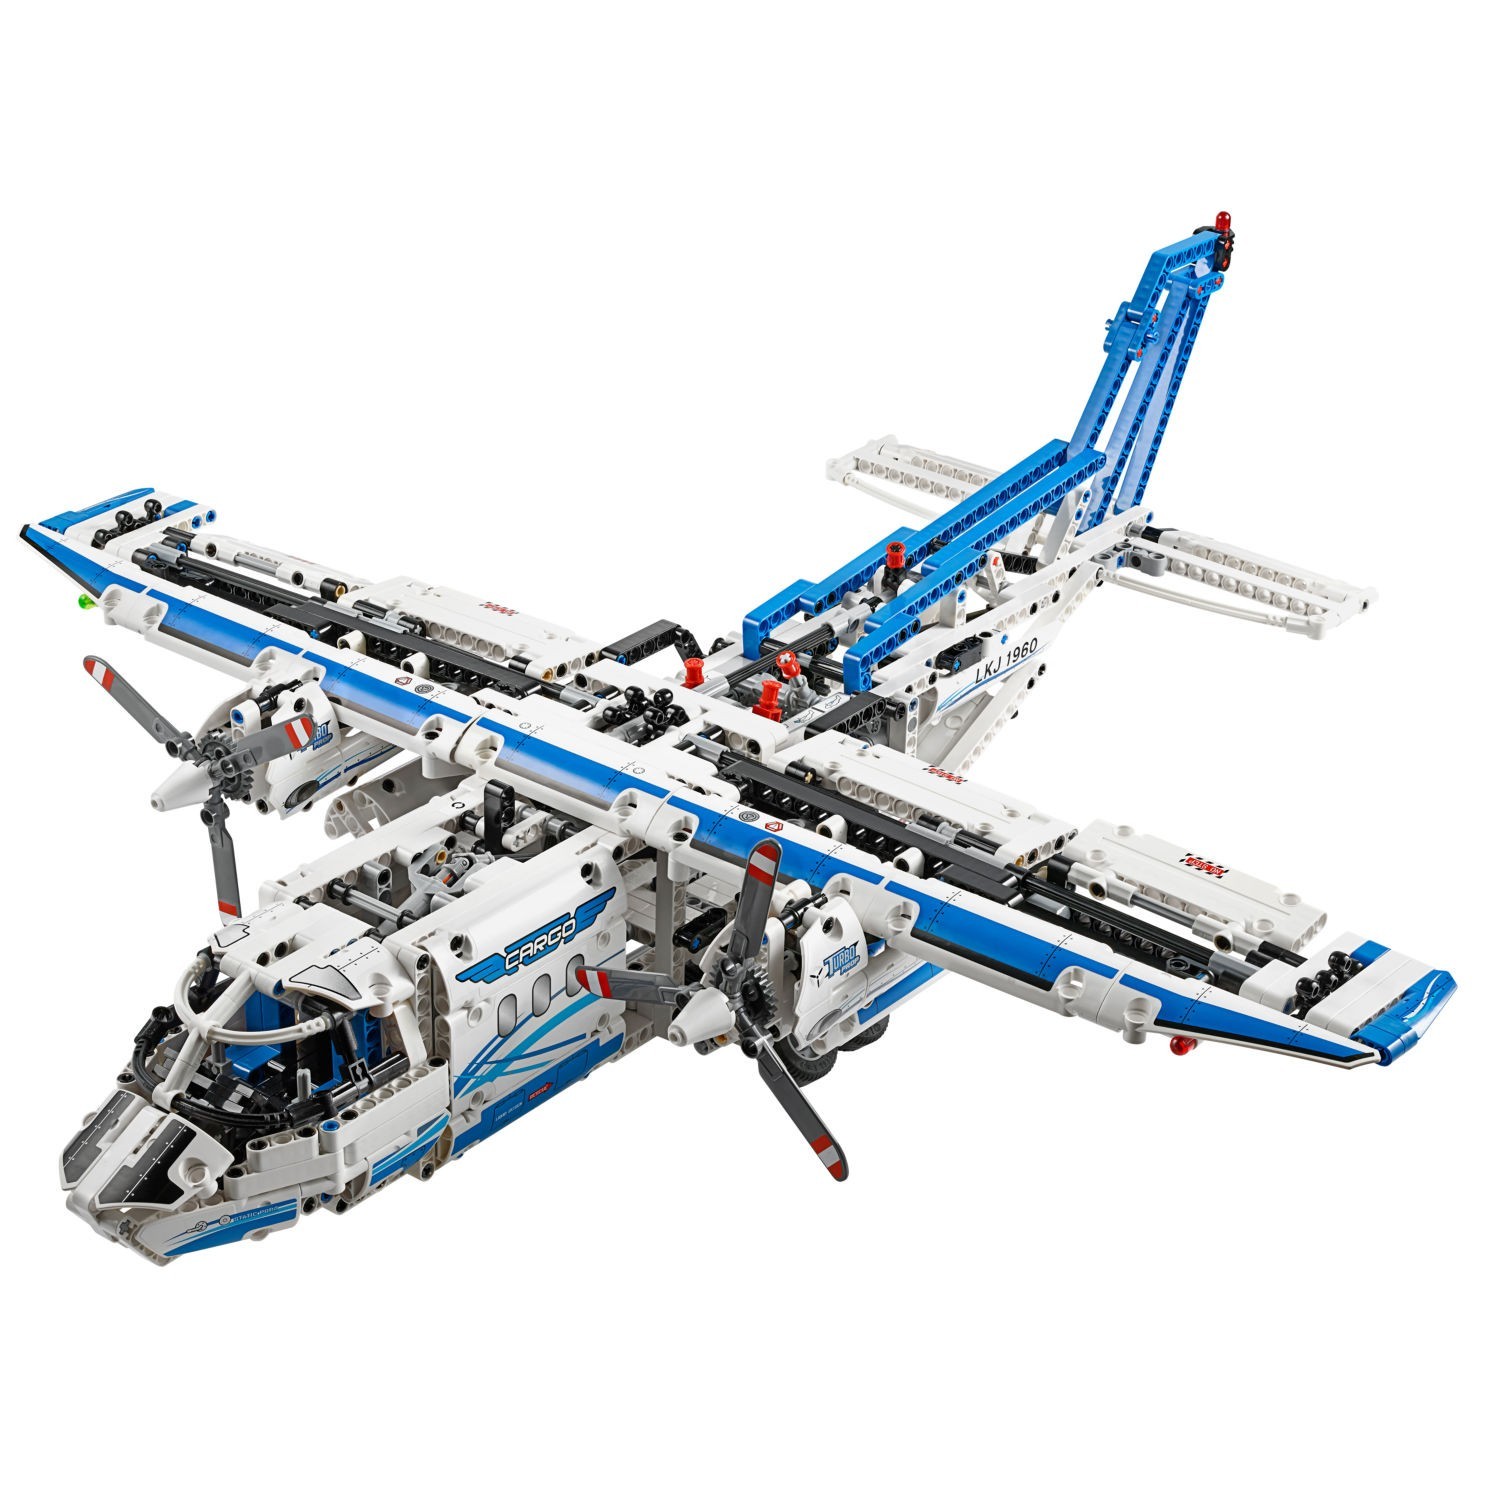 LEGO Technic 42023 pas cher, L'équipe de construction